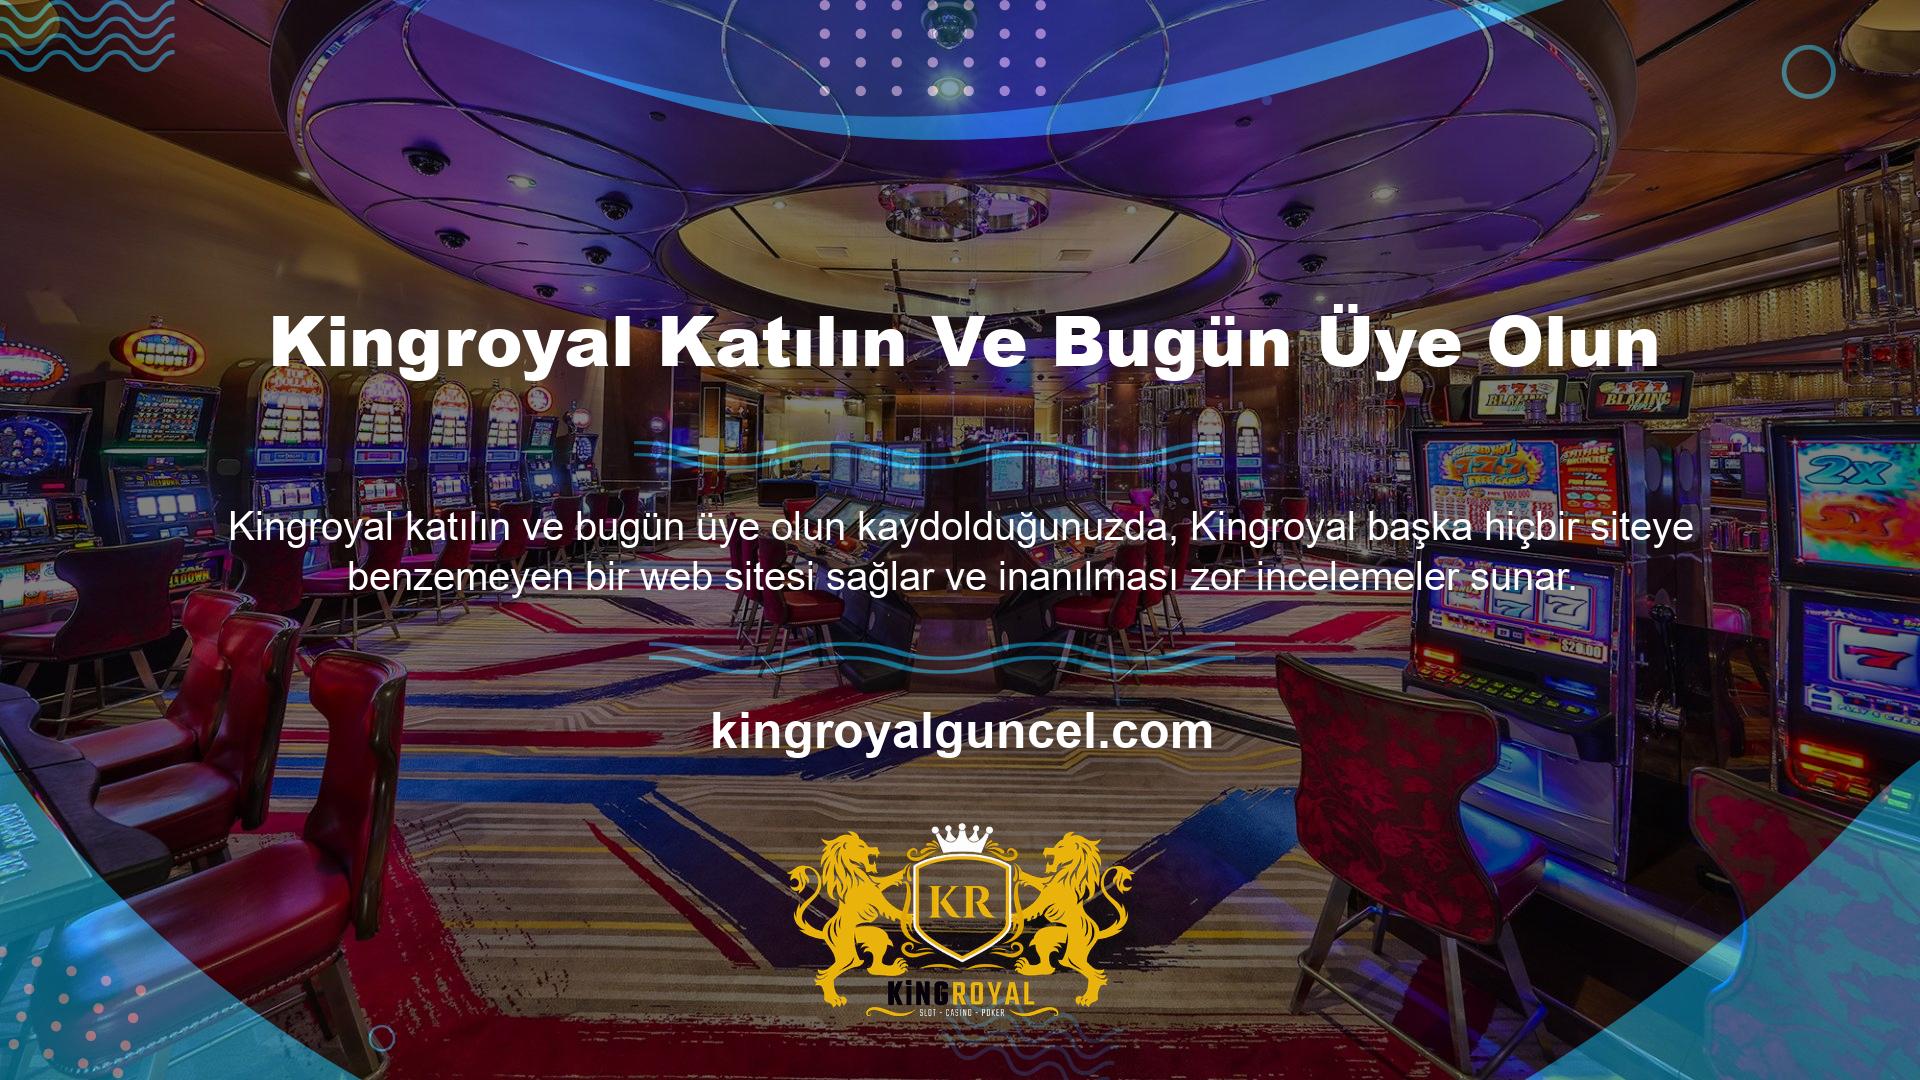 Kingroyal çevrimiçi casino ve casino hizmetleri mevcuttur